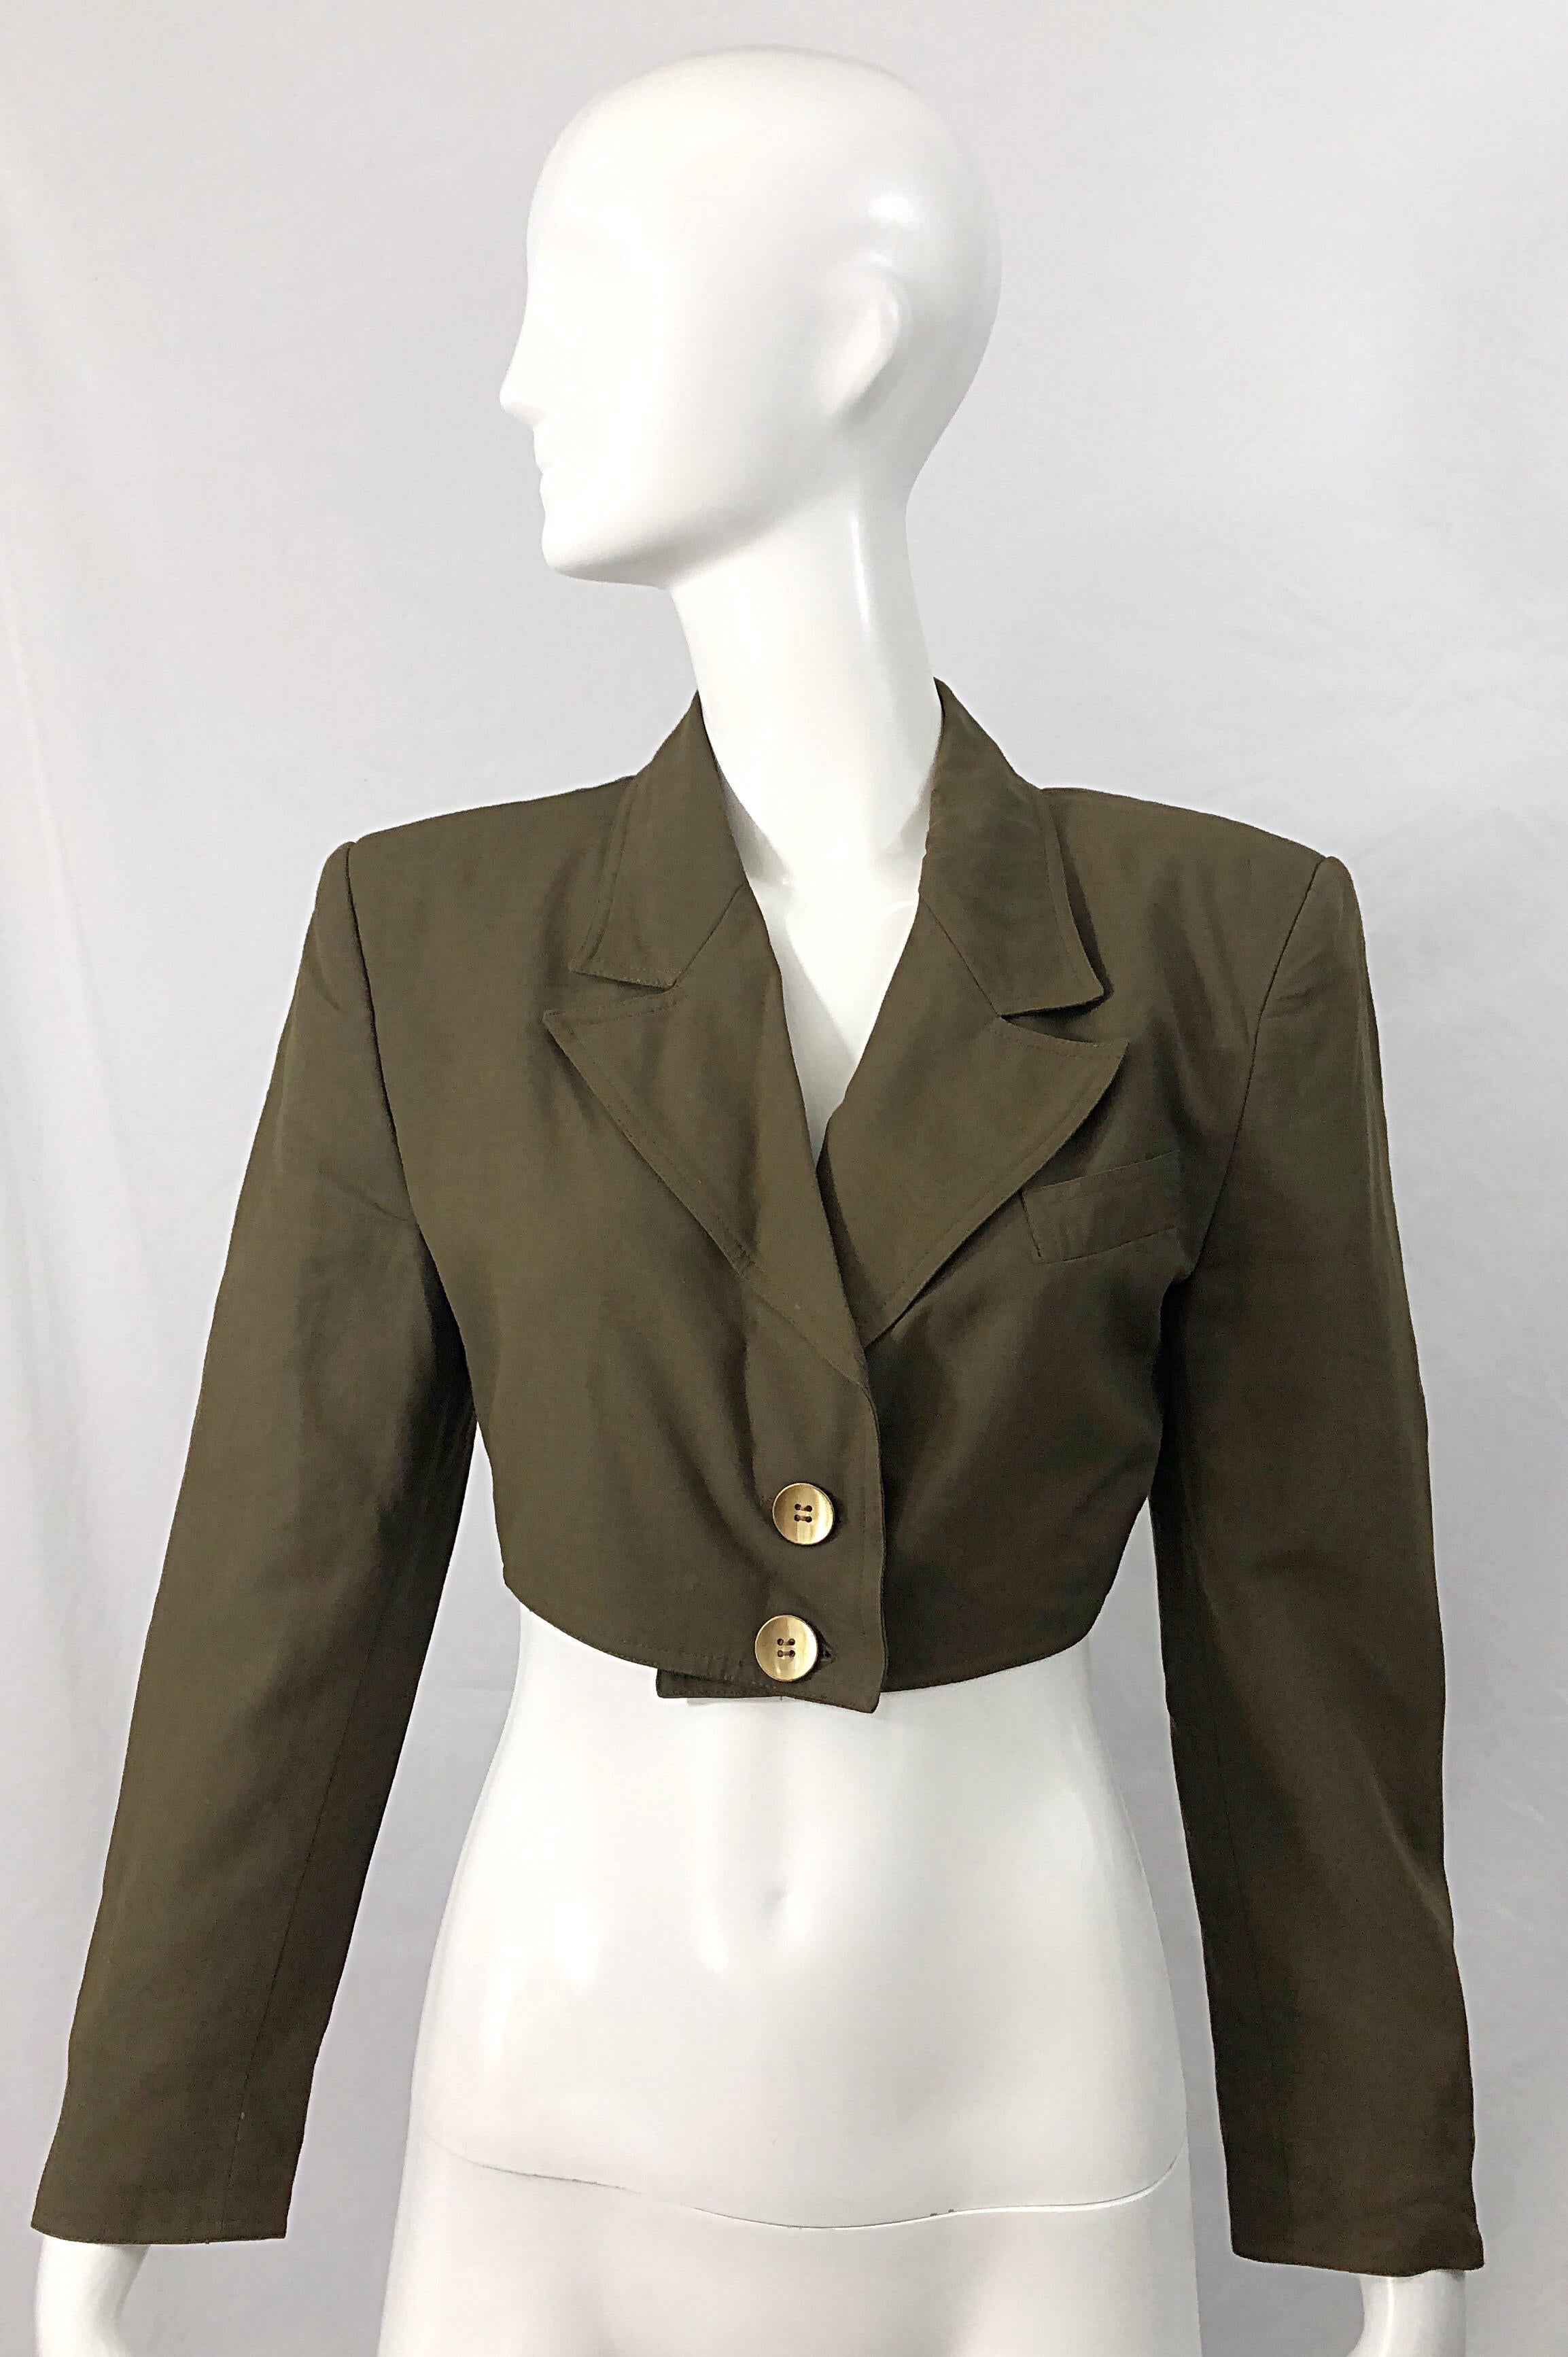 Chic veste blazer ROMEO GIGLI des années 1990 en rayonne et laine vert chasseur ! La couleur verte armée parfaite s'accorde avec tout, et est parfaite toute l'année. Tissu léger et doux. Superbe en superposition ou seul. Entièrement doublé.
60%